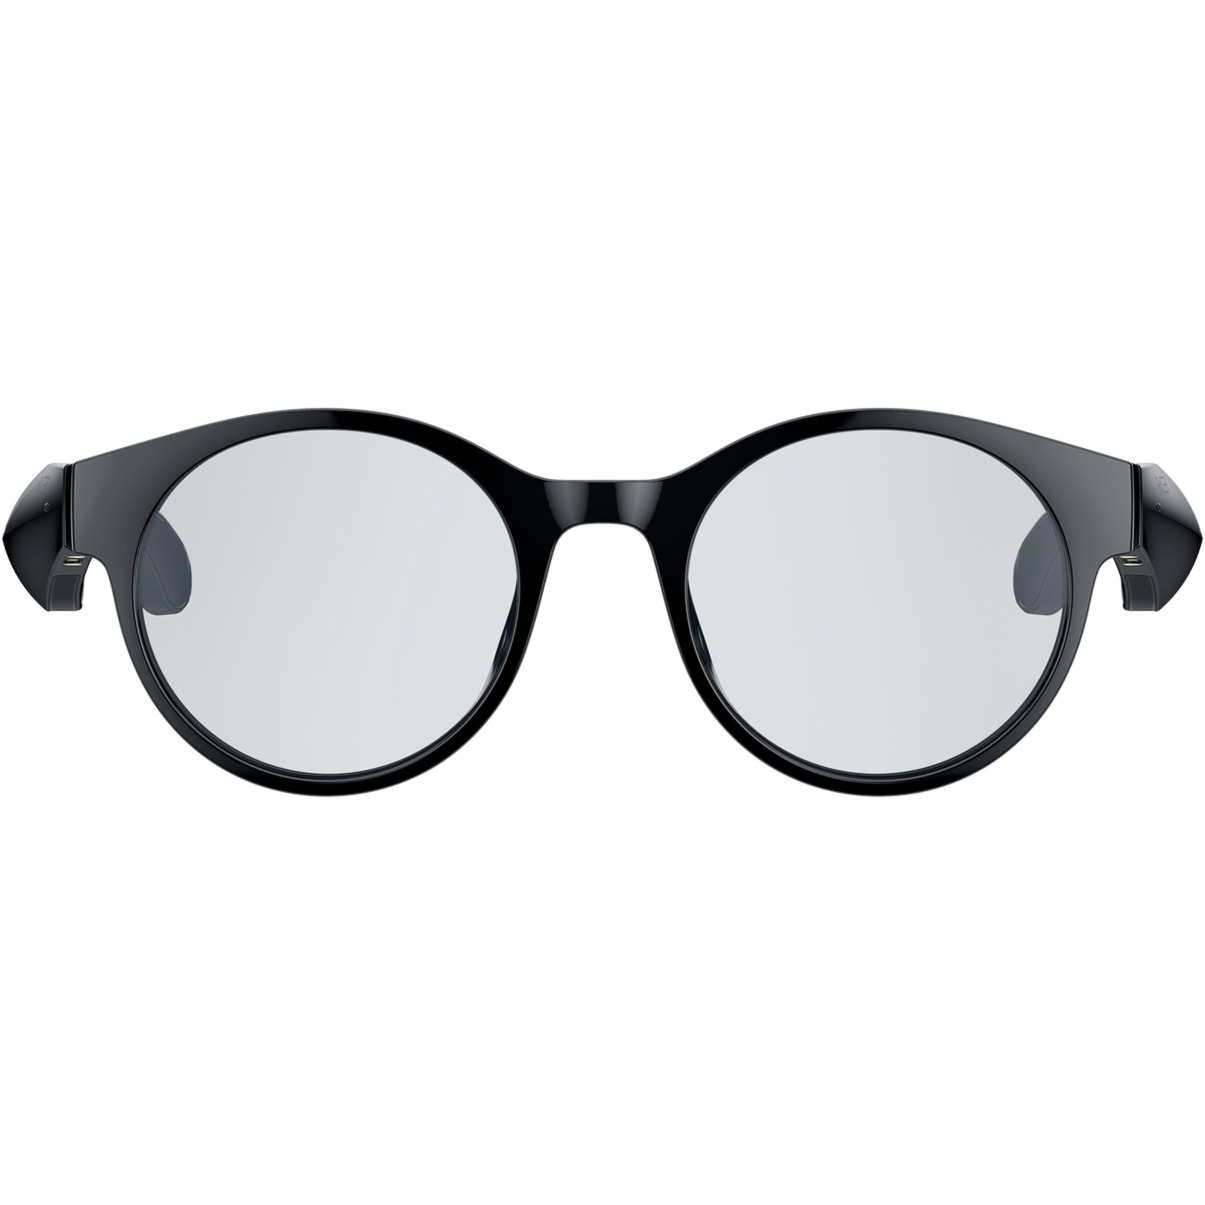 Image of Alternate - Anzu Smart Glasses (L, Rund), Multimedia-Brille online einkaufen bei Alternate